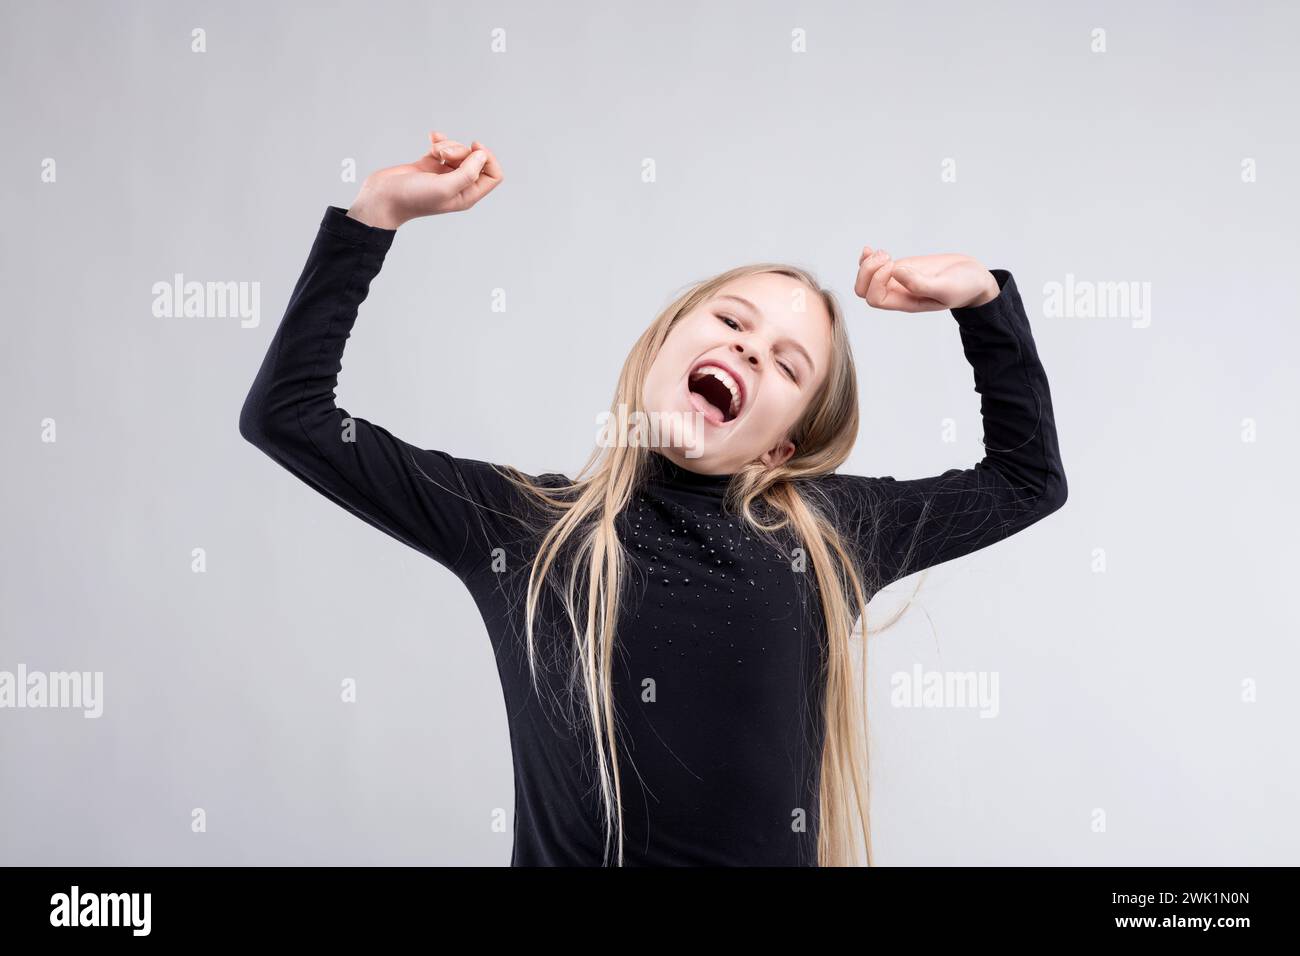 Das überschwängliche junge Mädchen mit erhobenen Armen feiert fröhlich, ihr Lachen spiegelt das Wesen der Lautstärke wider Stockfoto